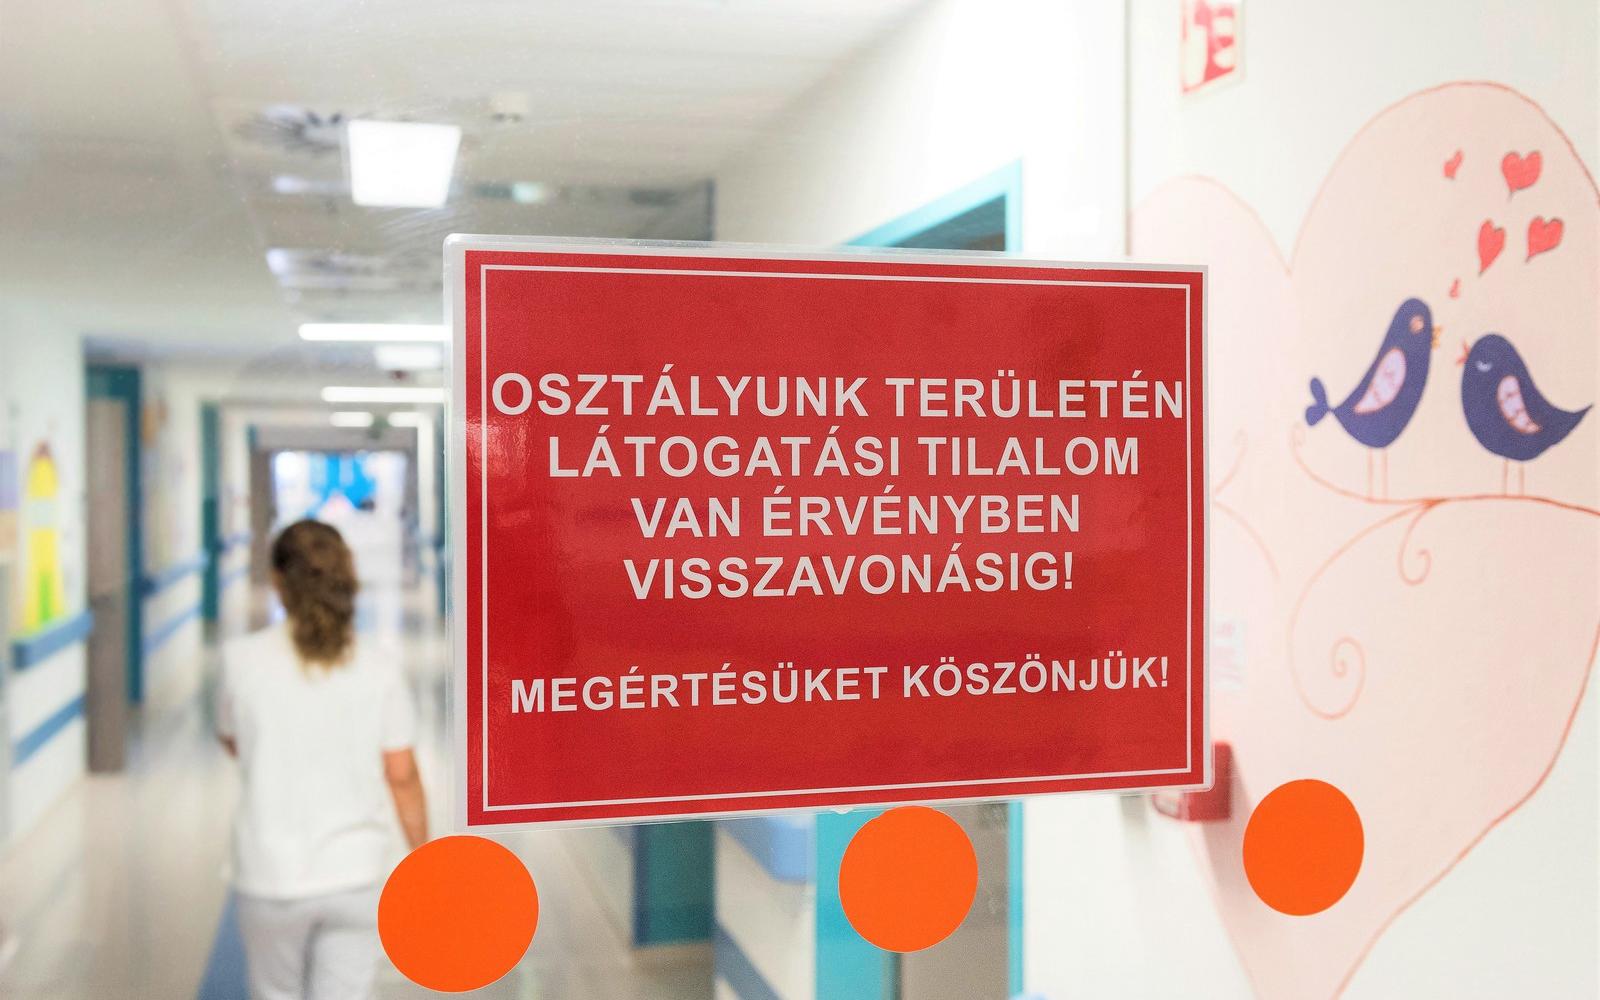 hetényi géza kórház látogatási tilalom 2021